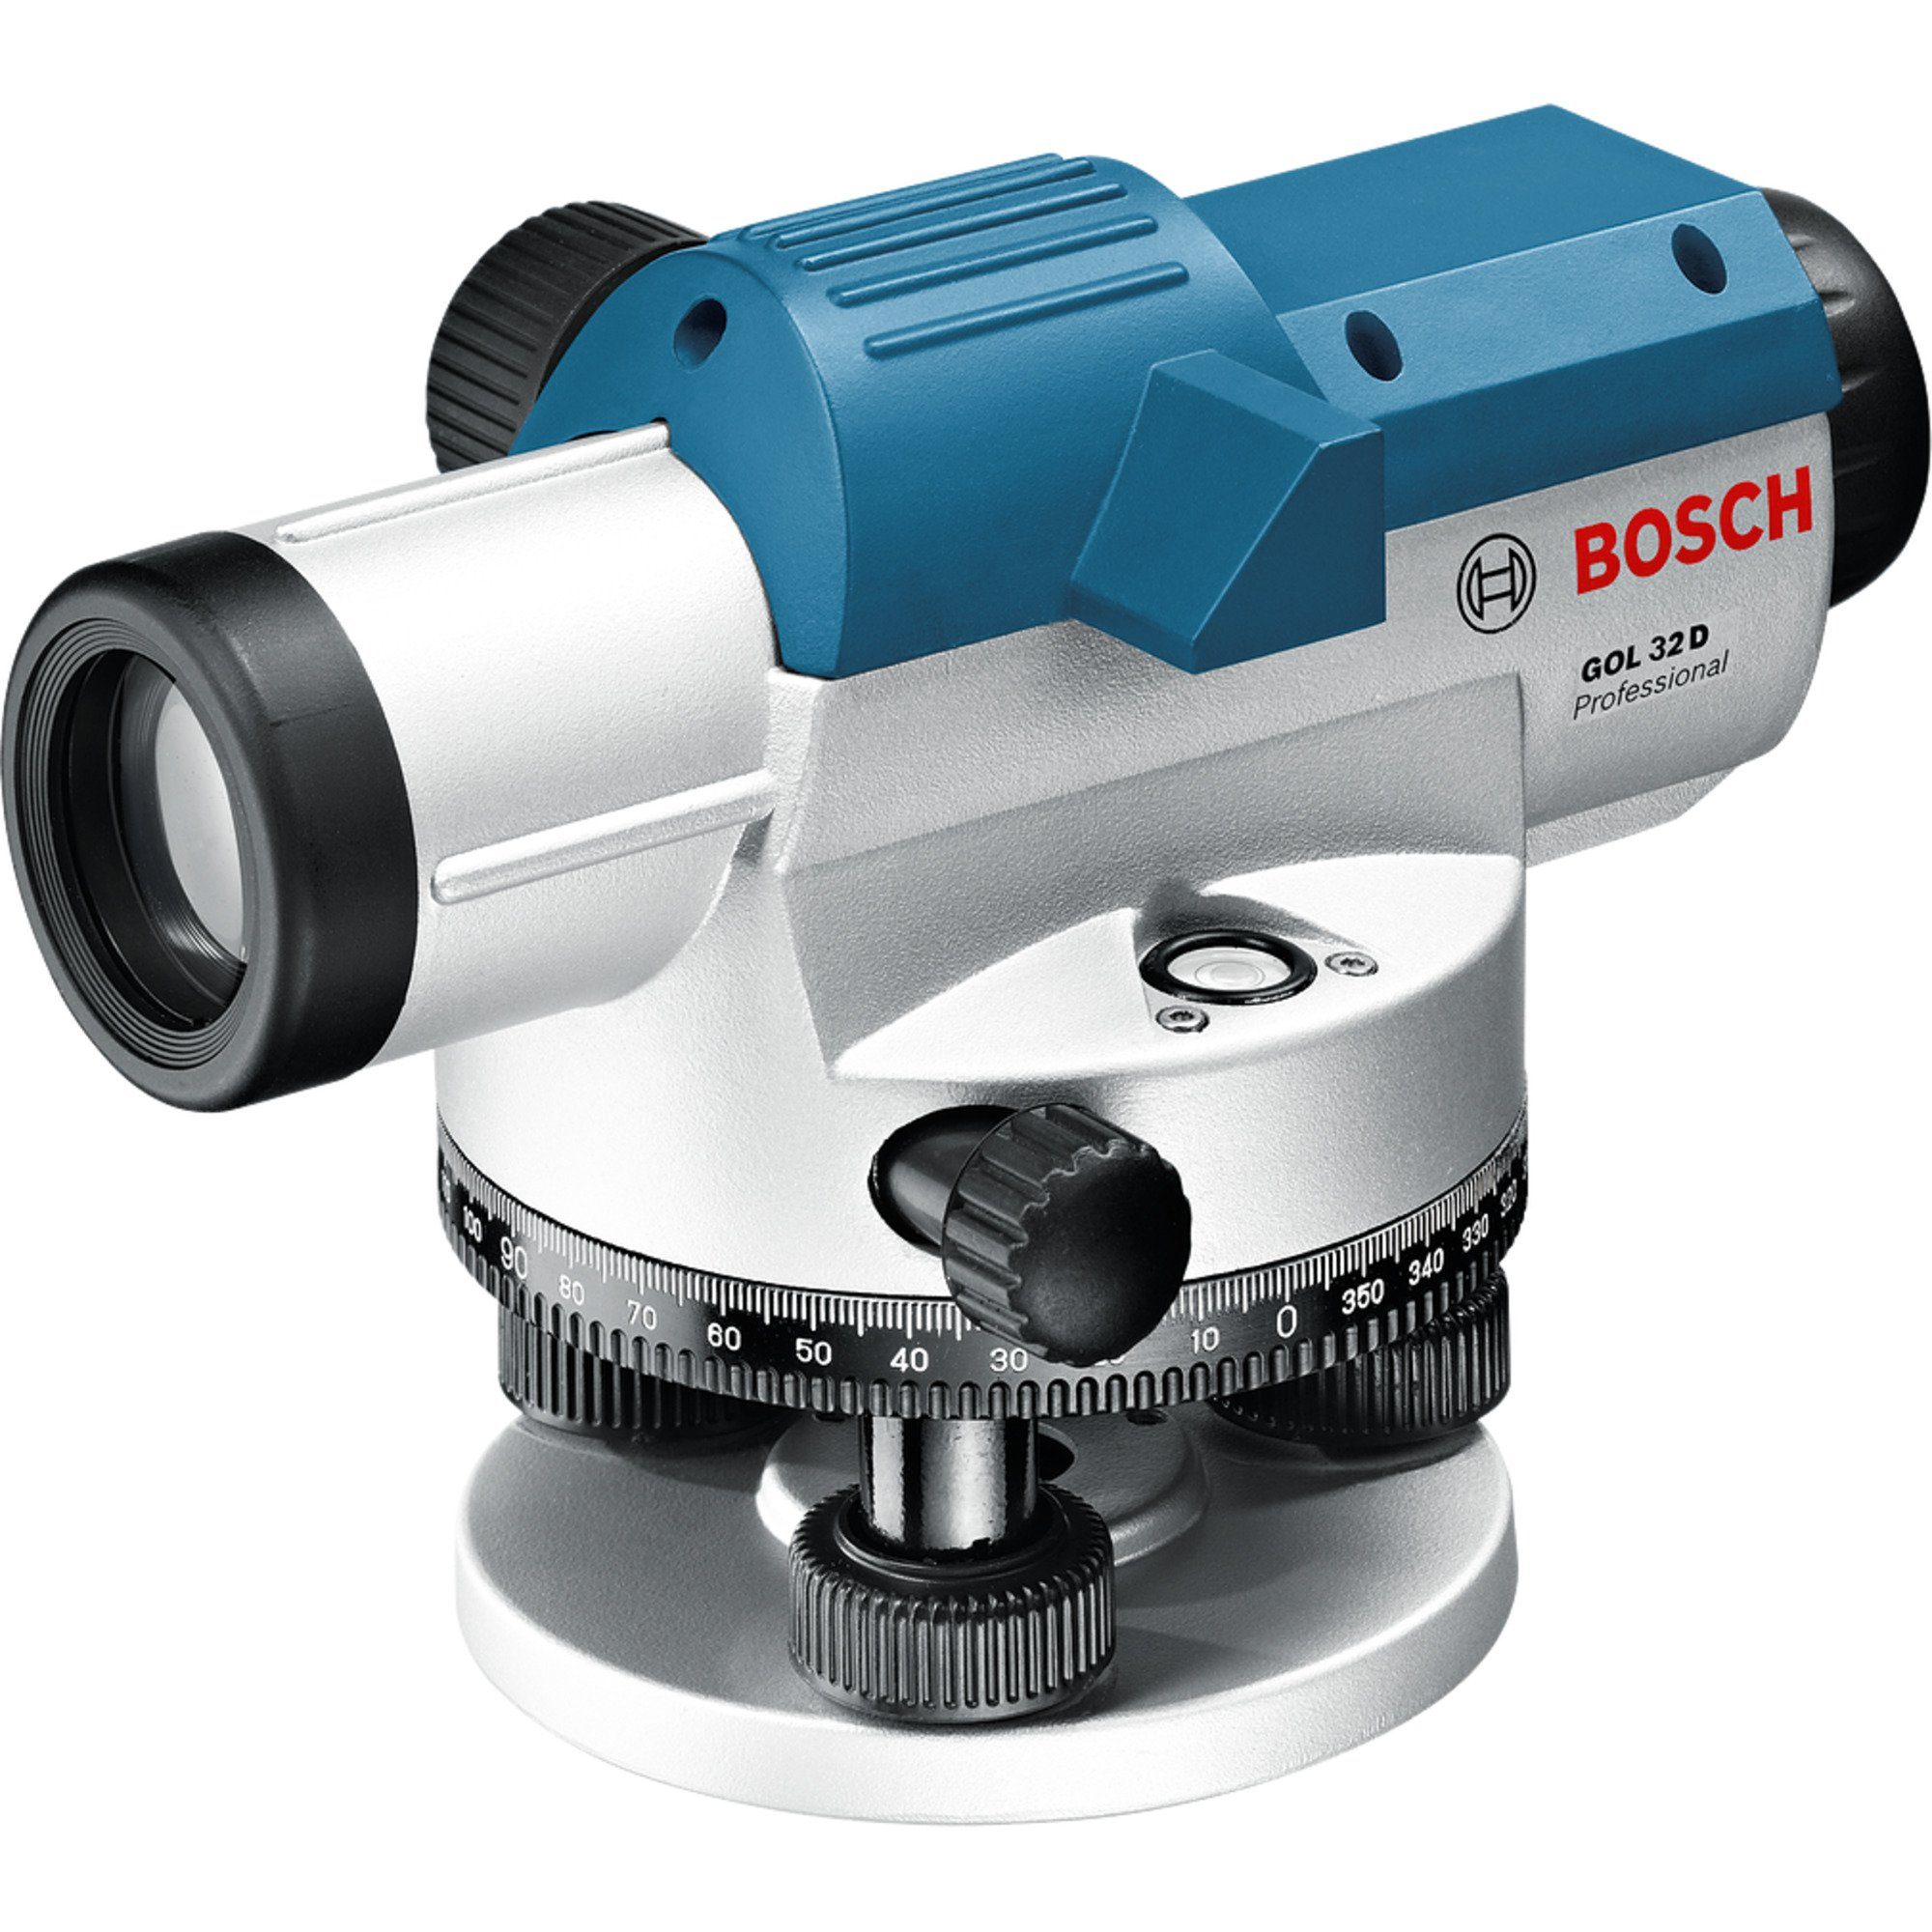 BOSCH Akku-Multifunktionswerkzeug Bosch Nivelliergerät 32 Professional Optisches GOL